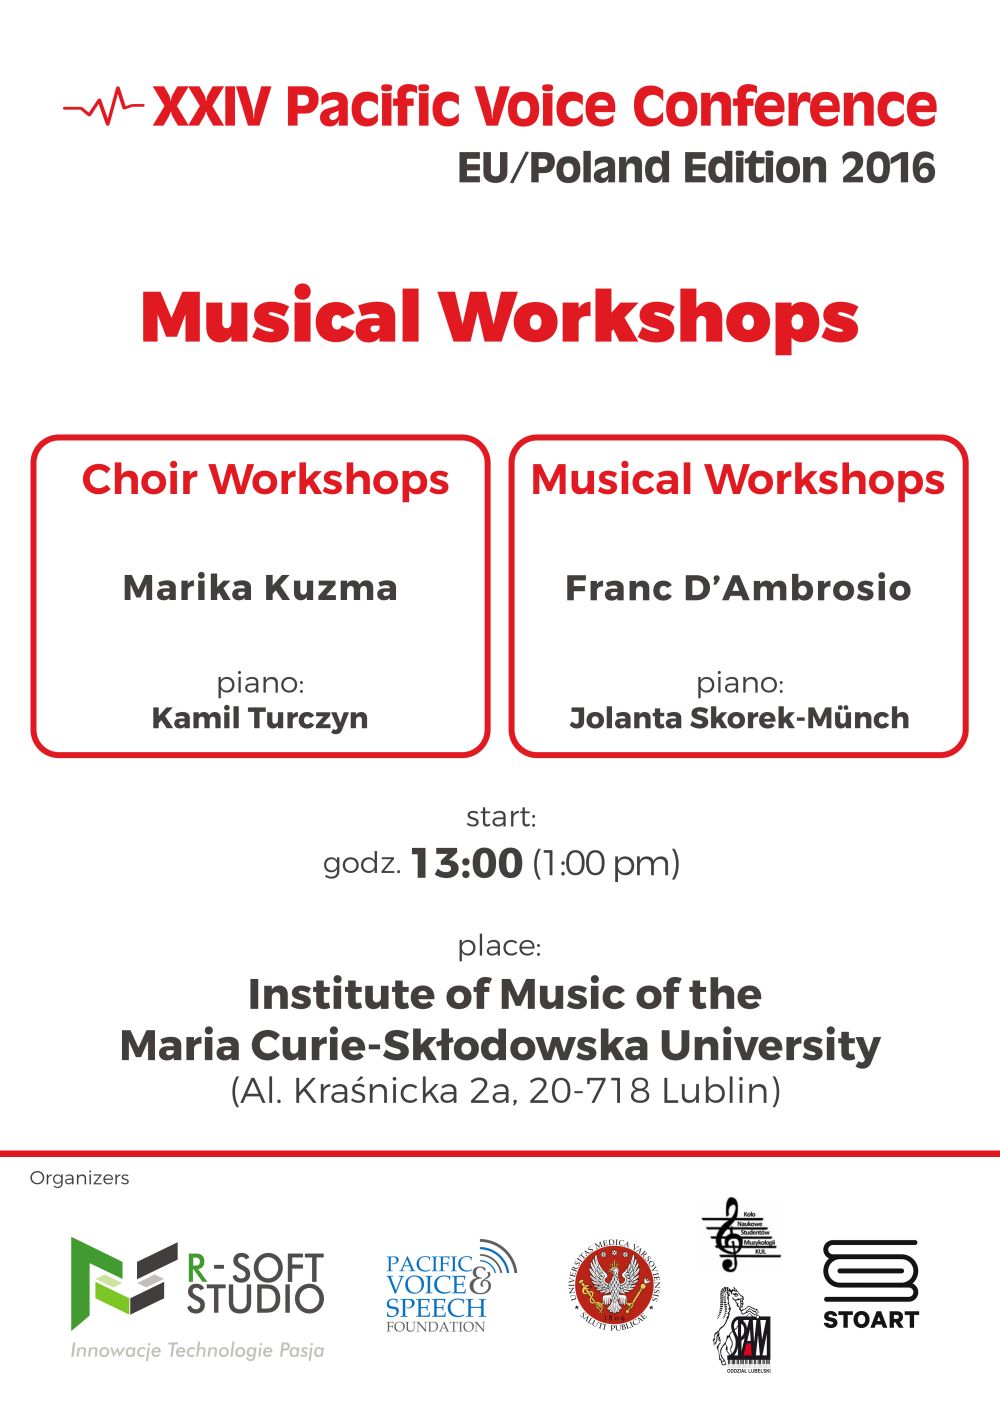 Musical workshops